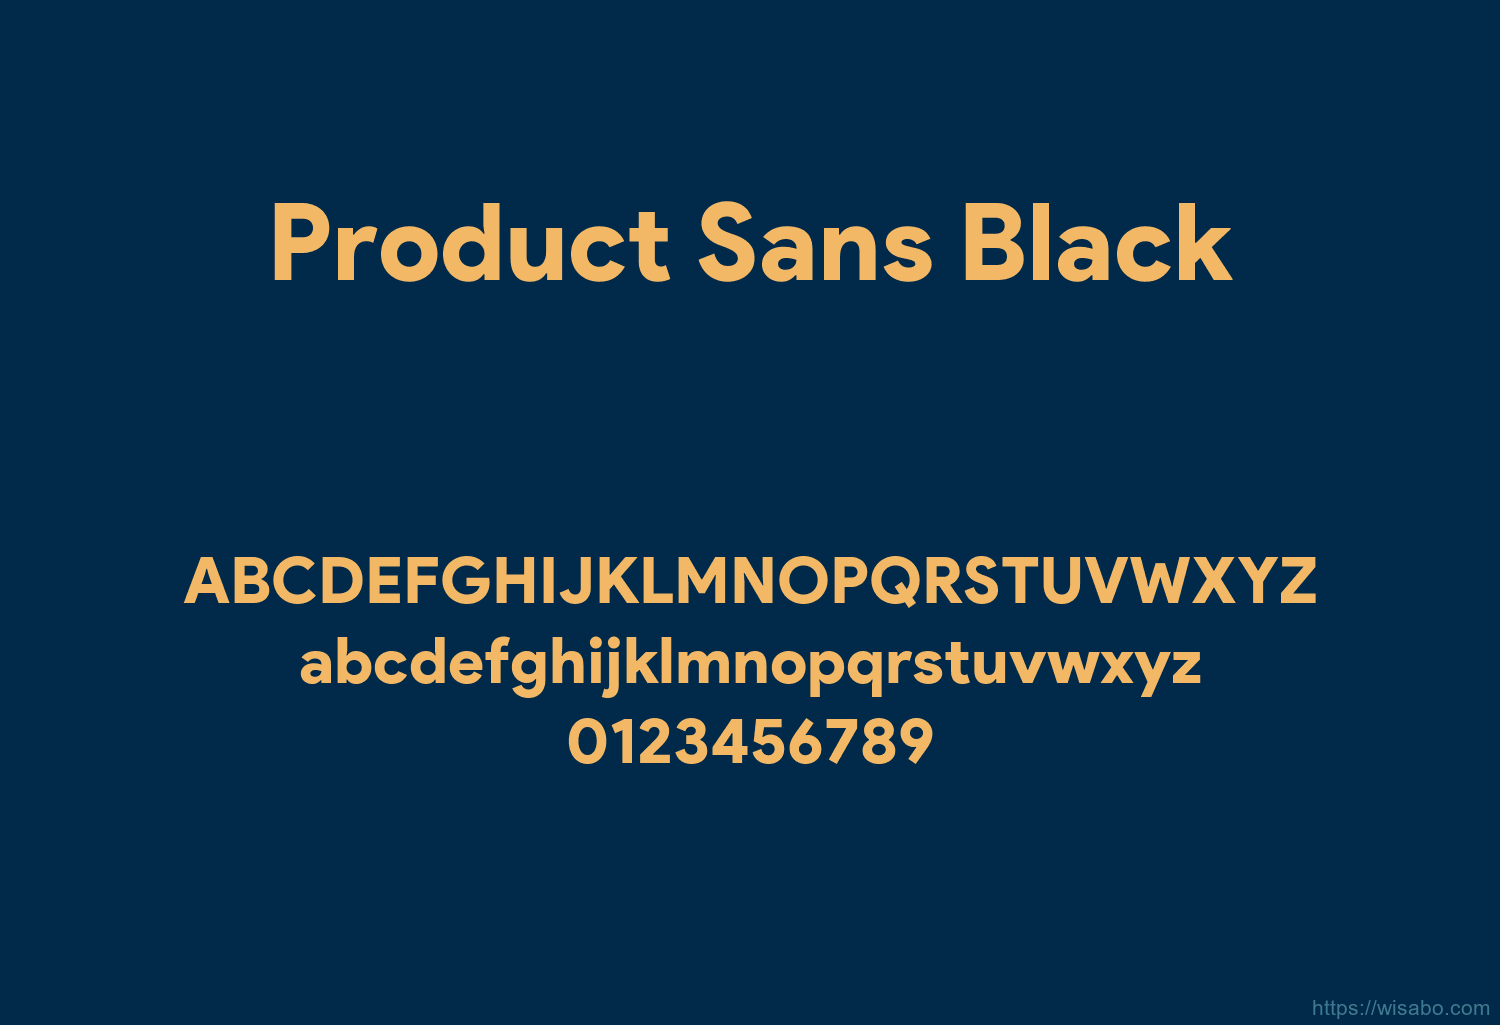 Product Sans Black